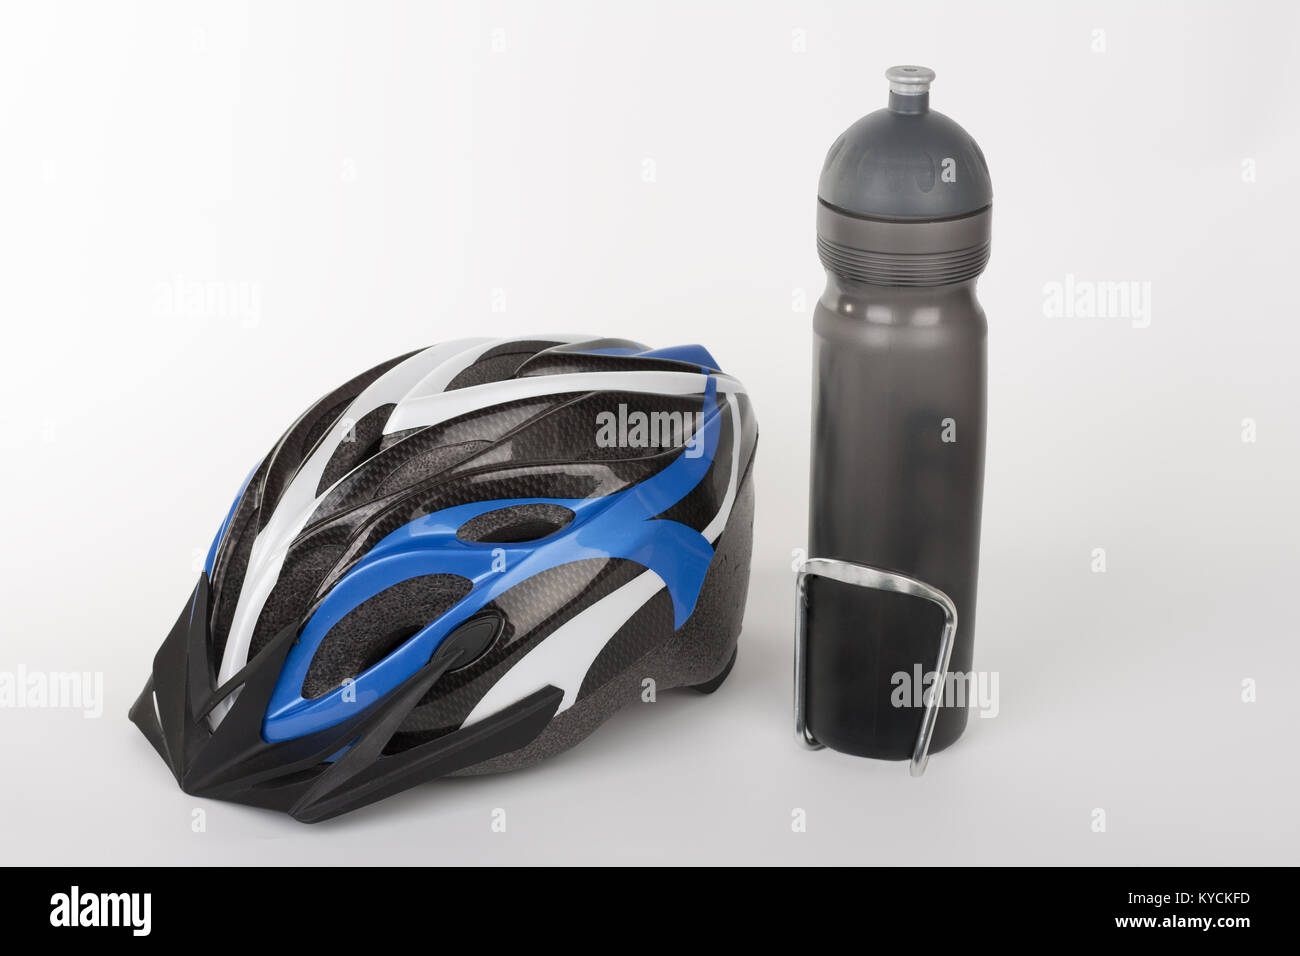 Fahrrad Helm, Schutz der Kopfverletzung auf Radfahren und Wasserflasche, studio Foto auf Hintergrund isoliert Stockfoto